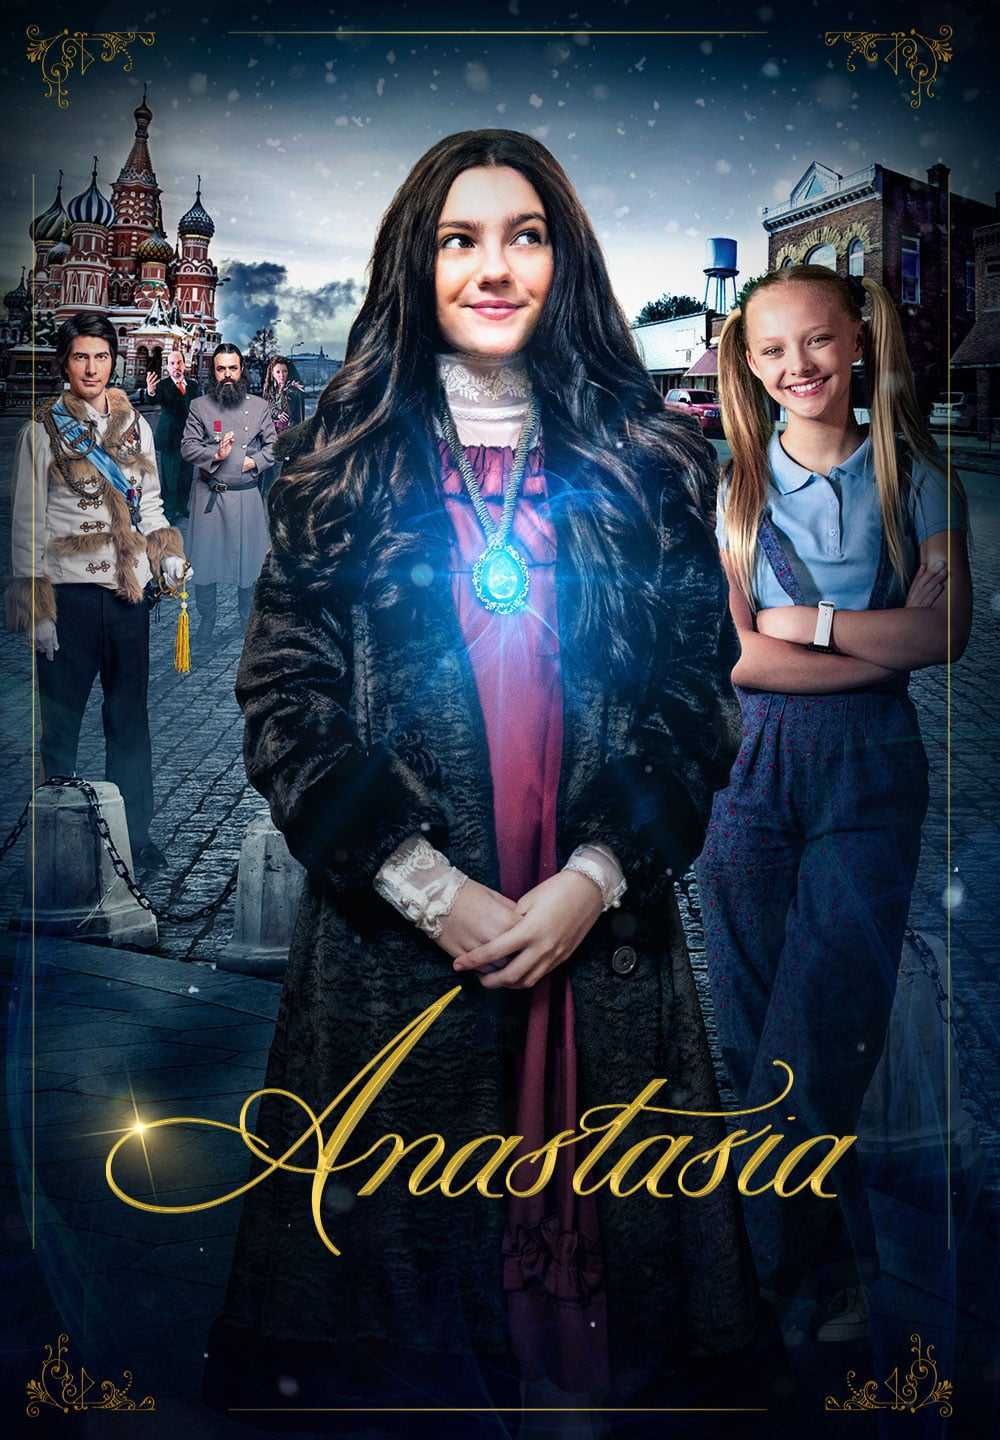 Anastasia in streaming